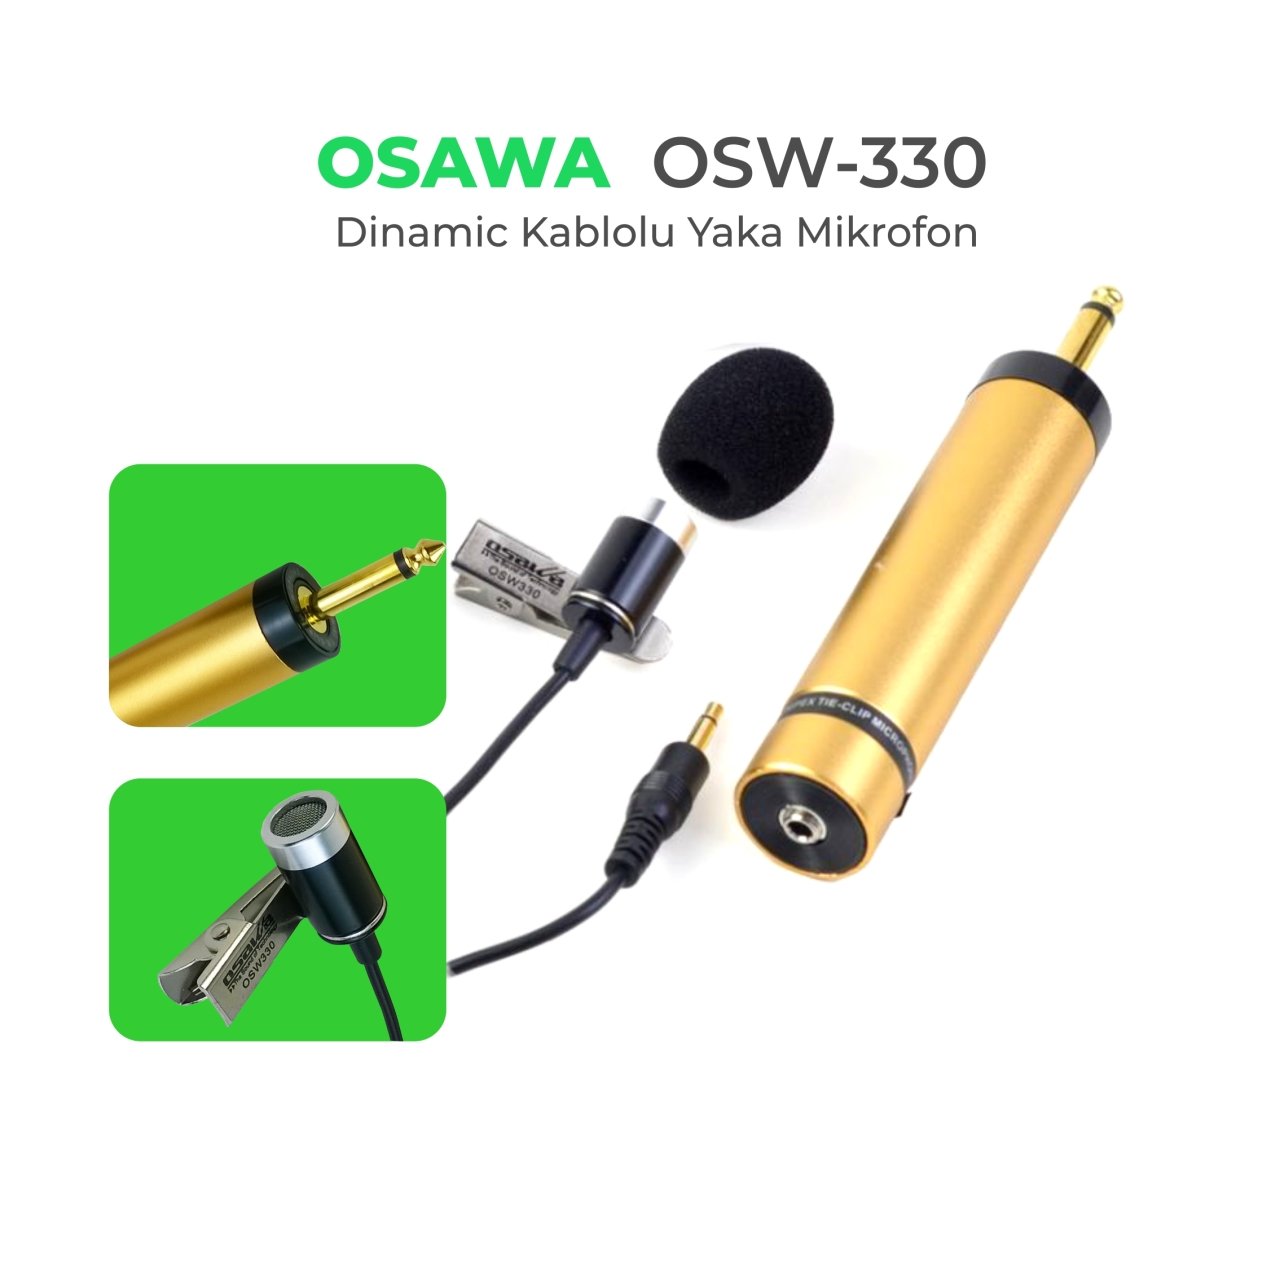 OSAWA OSW-330 Kablolu Yaka Mikrofonu